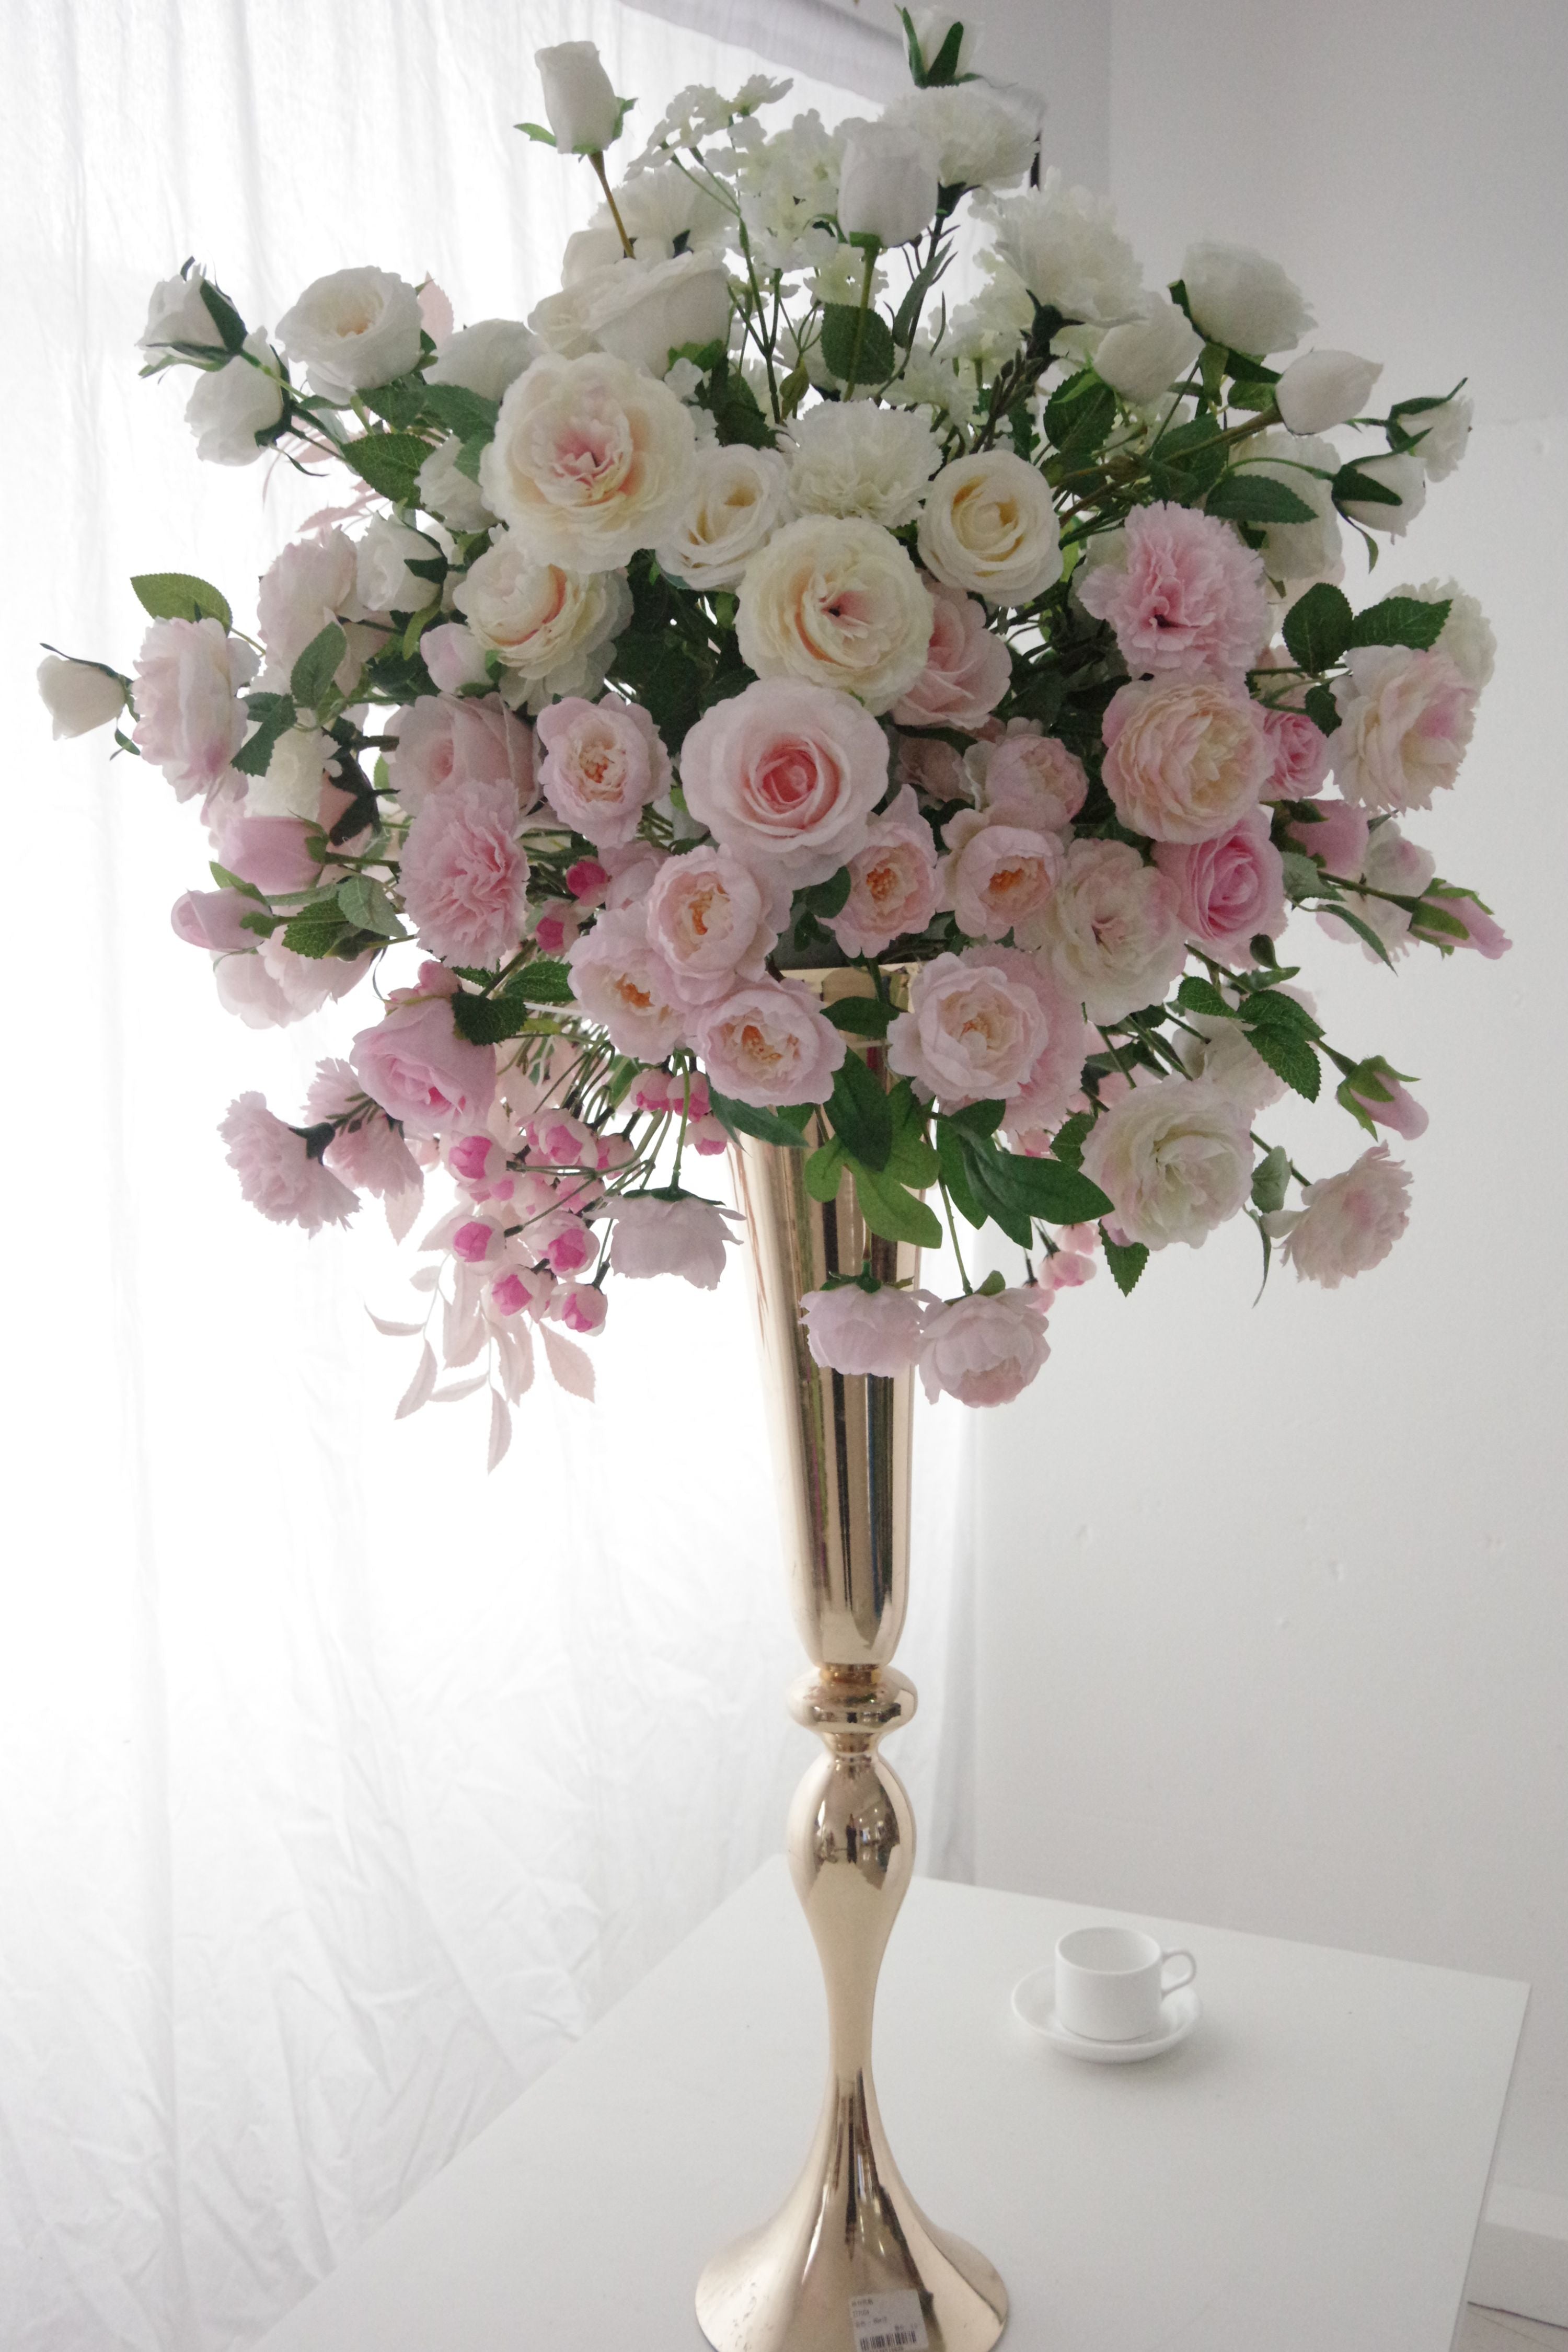 Chuchotements élégants - Délicate gamme de roses roses au milieu d'un voile de fleurs blanches FB-060